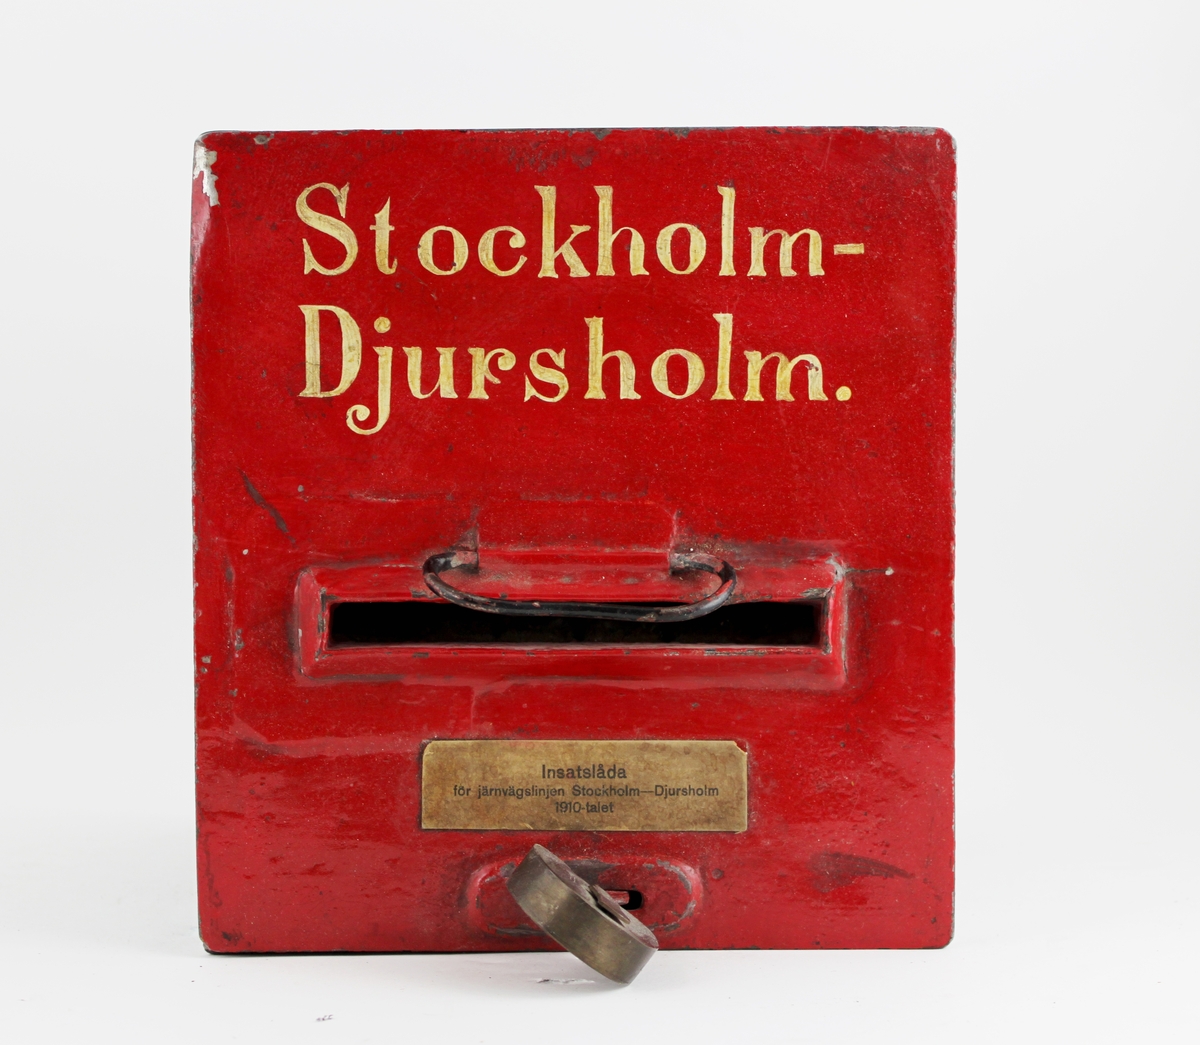 Insatsbrevlåda, svart med rött lock och texten Stockholm
-Djursholm i vitt på locket. Lådan är låst med ett hänglås,
hänglåsetär märkt P.L. (=postlås). Insatsbrevlådor infördes 1868 och
varavsedda för befordran av vanliga brev och brevkort
mellanpostanstalter invid järnvägs- och ångbåtslinjer.